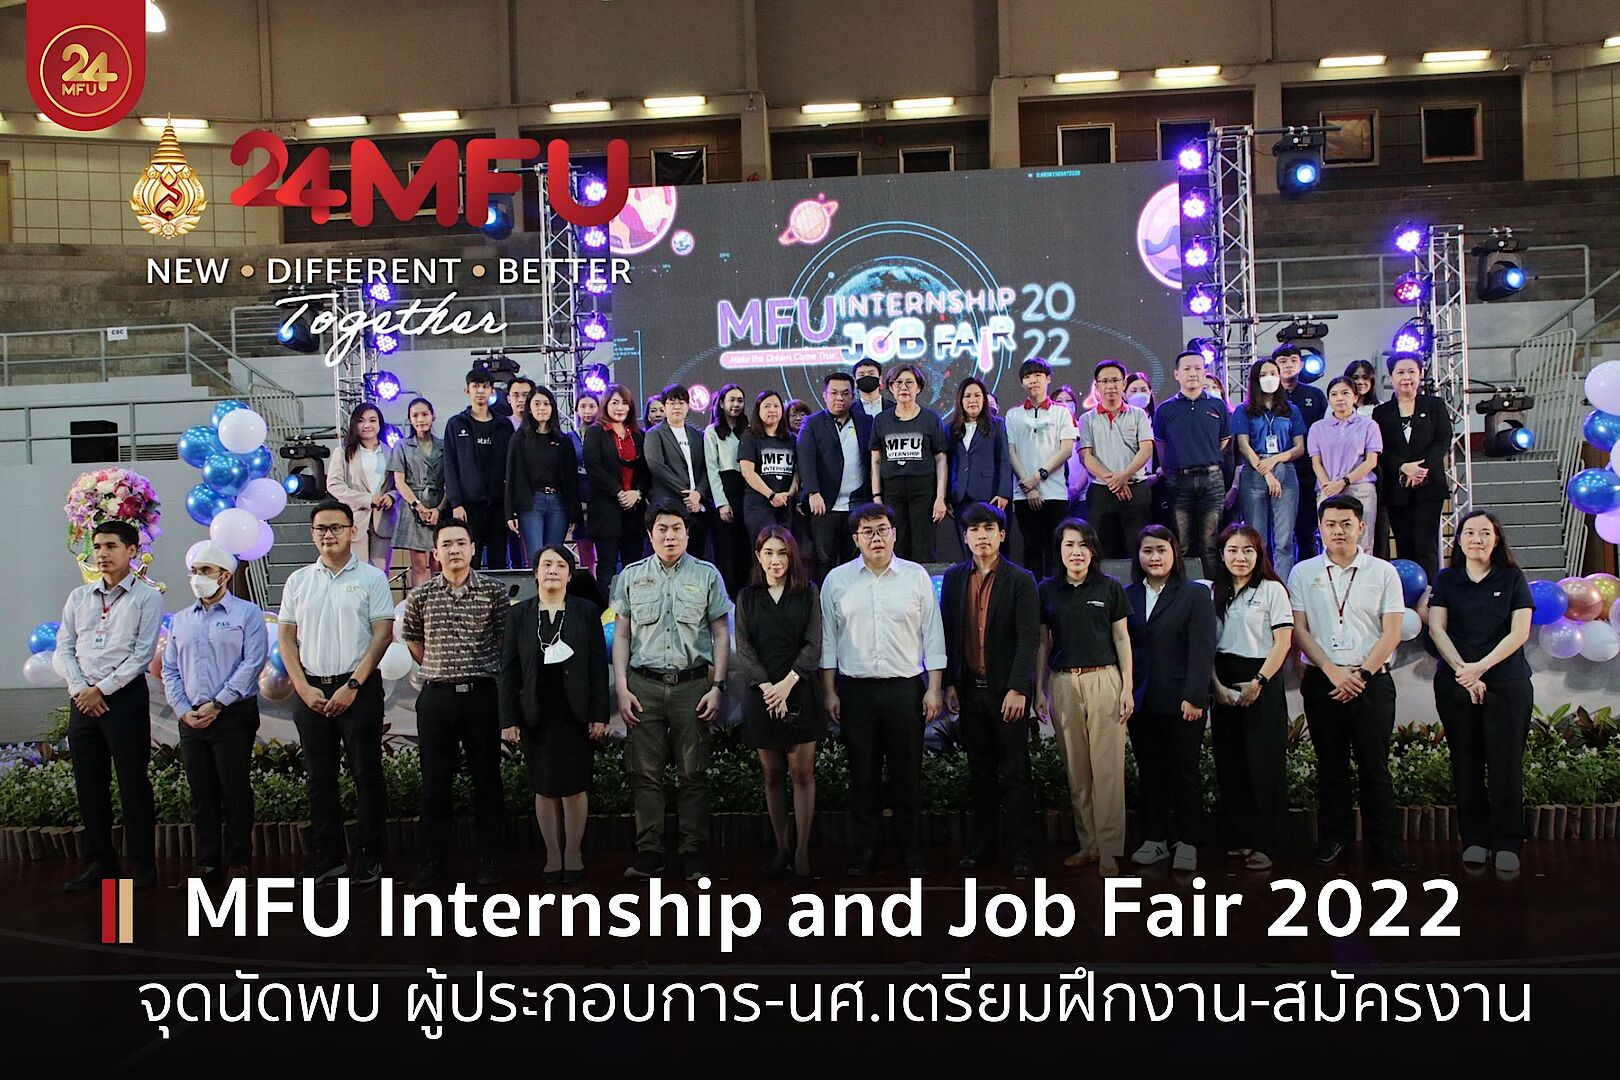 มฟล. จัด MFU Internship and Job Fair 2022 ผู้ประกอบการเชื่อมั่นนักศึกษา มฟล. พร้อมฝึกงาน-ทำงานตอบโจทย์